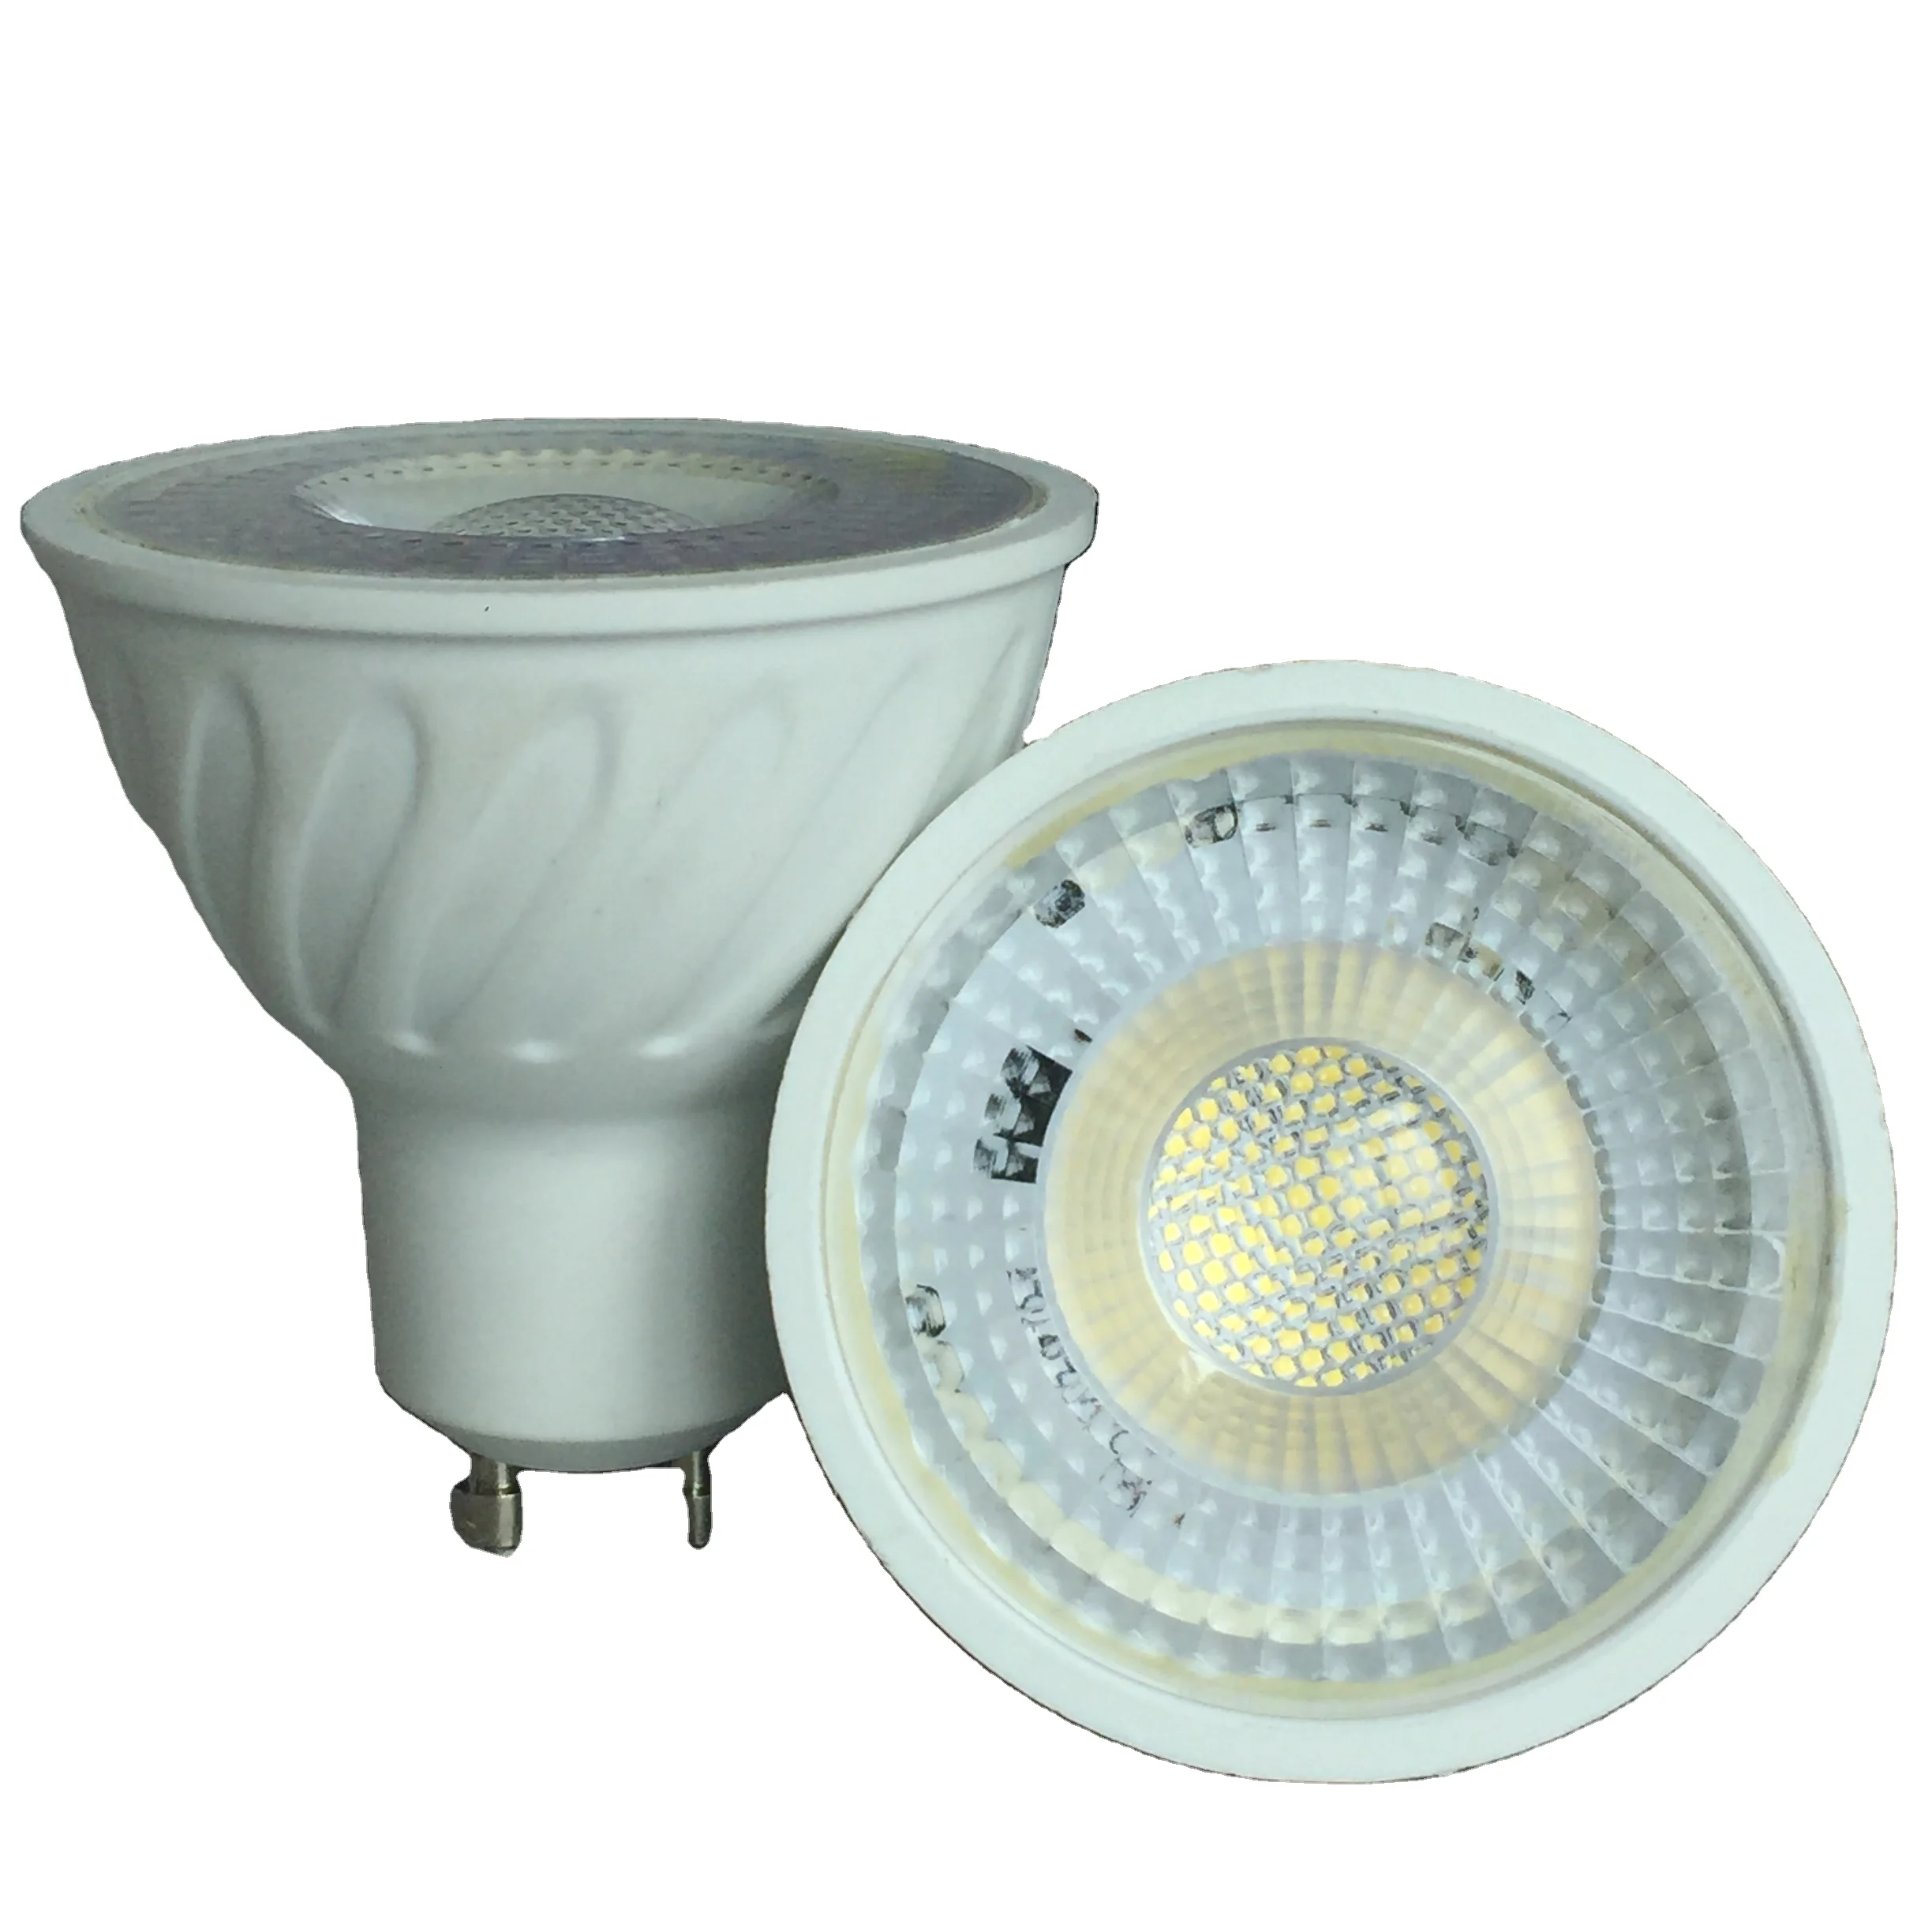 GU10 Spot Light 220V 5W 7W Bombillas LED Spotlight Bulb GU5.3 Ampoule 2835 SMD Lighting Home  for ceiling lighting